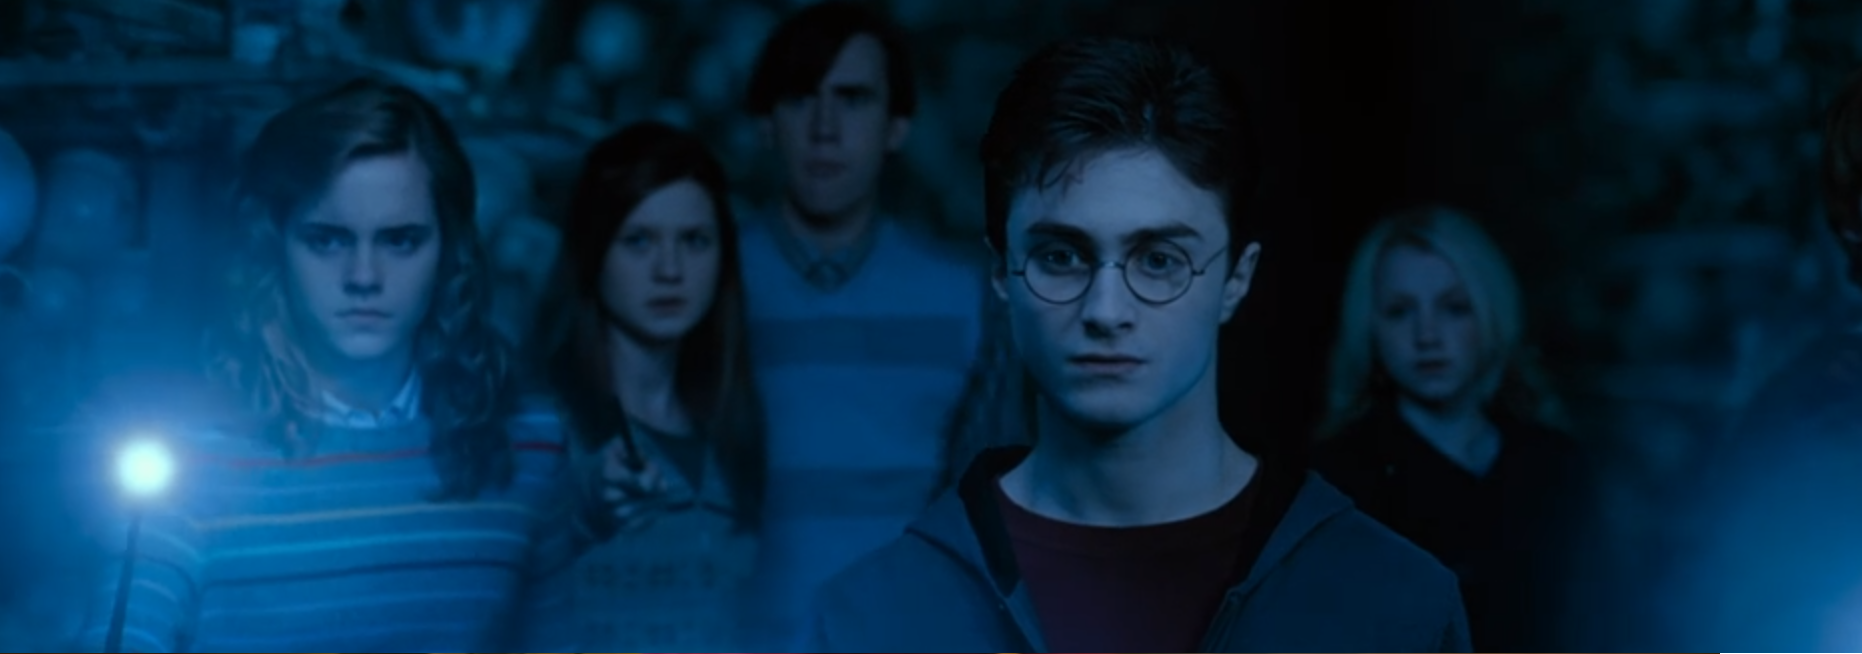 Welke Harry Potter film zie je hier? 20